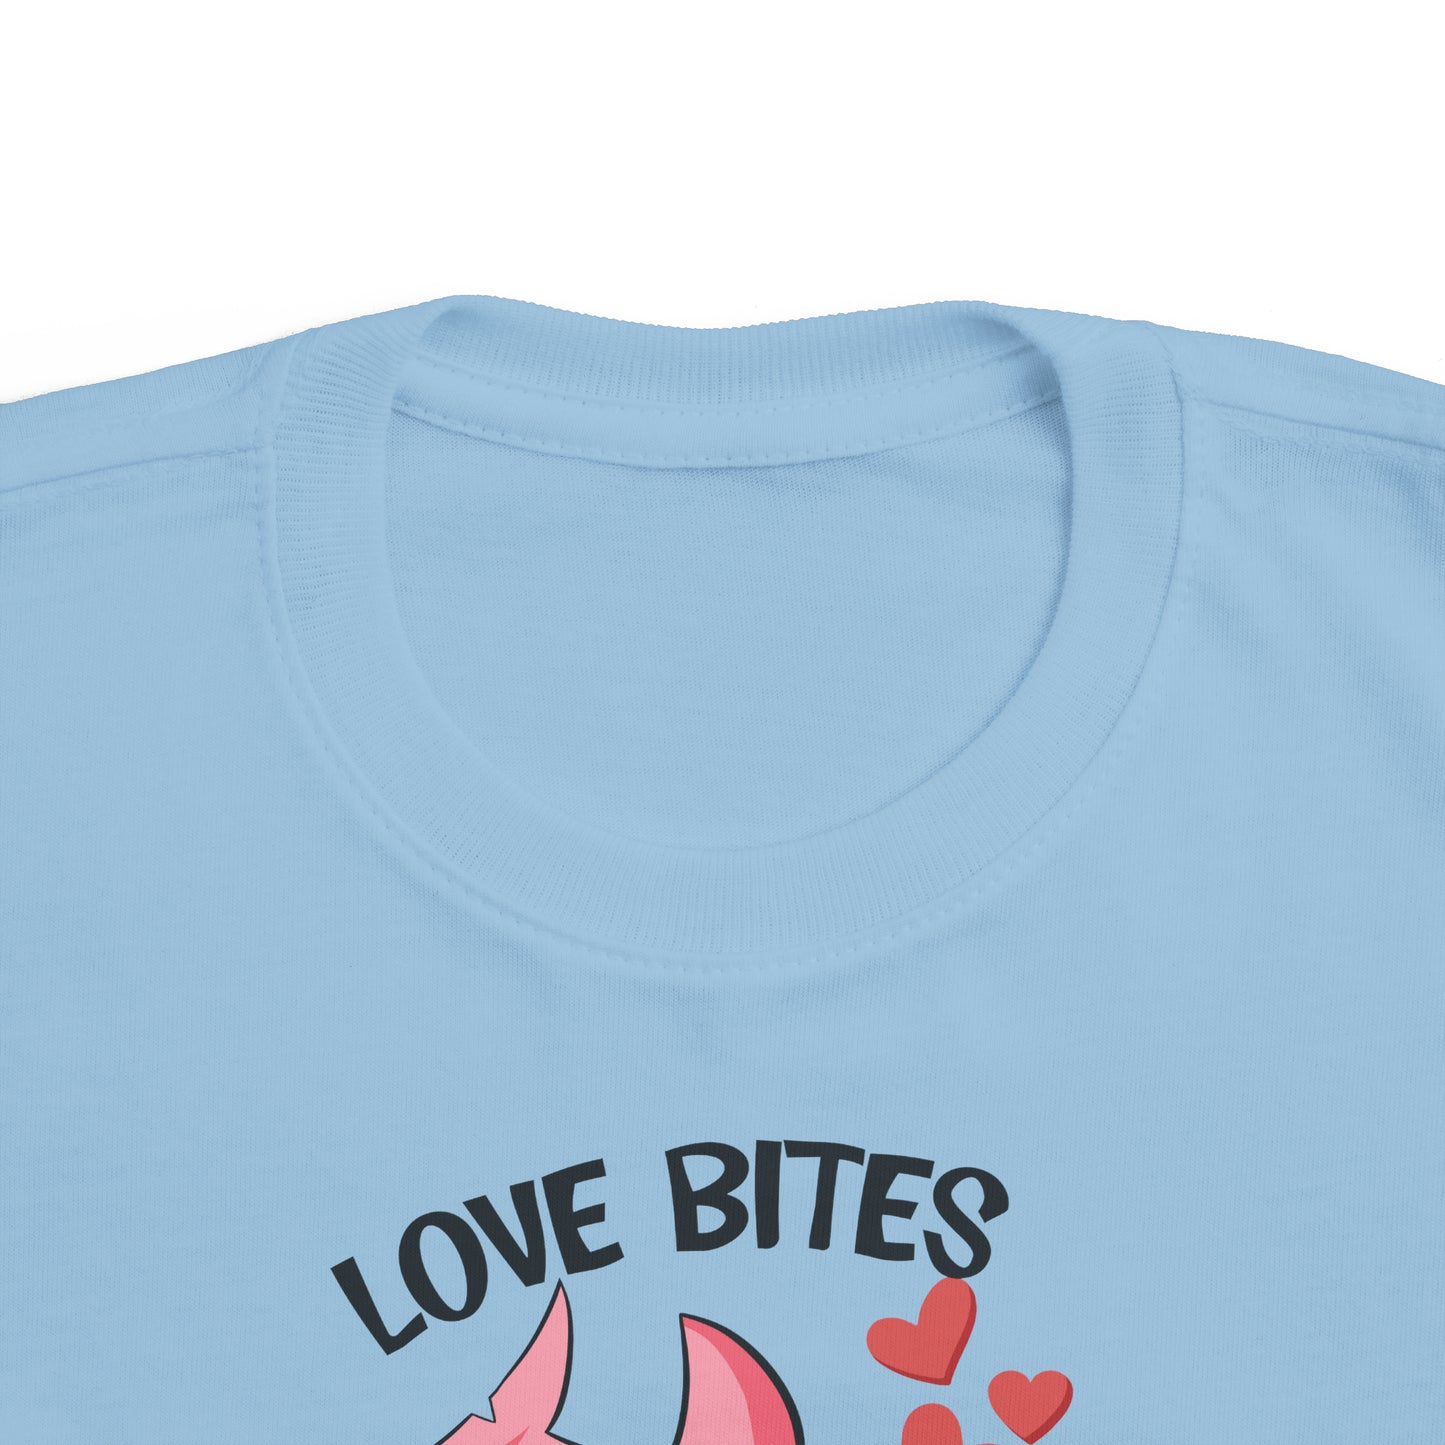 love bites! valentines day Toddler's Fine Jersey Tee